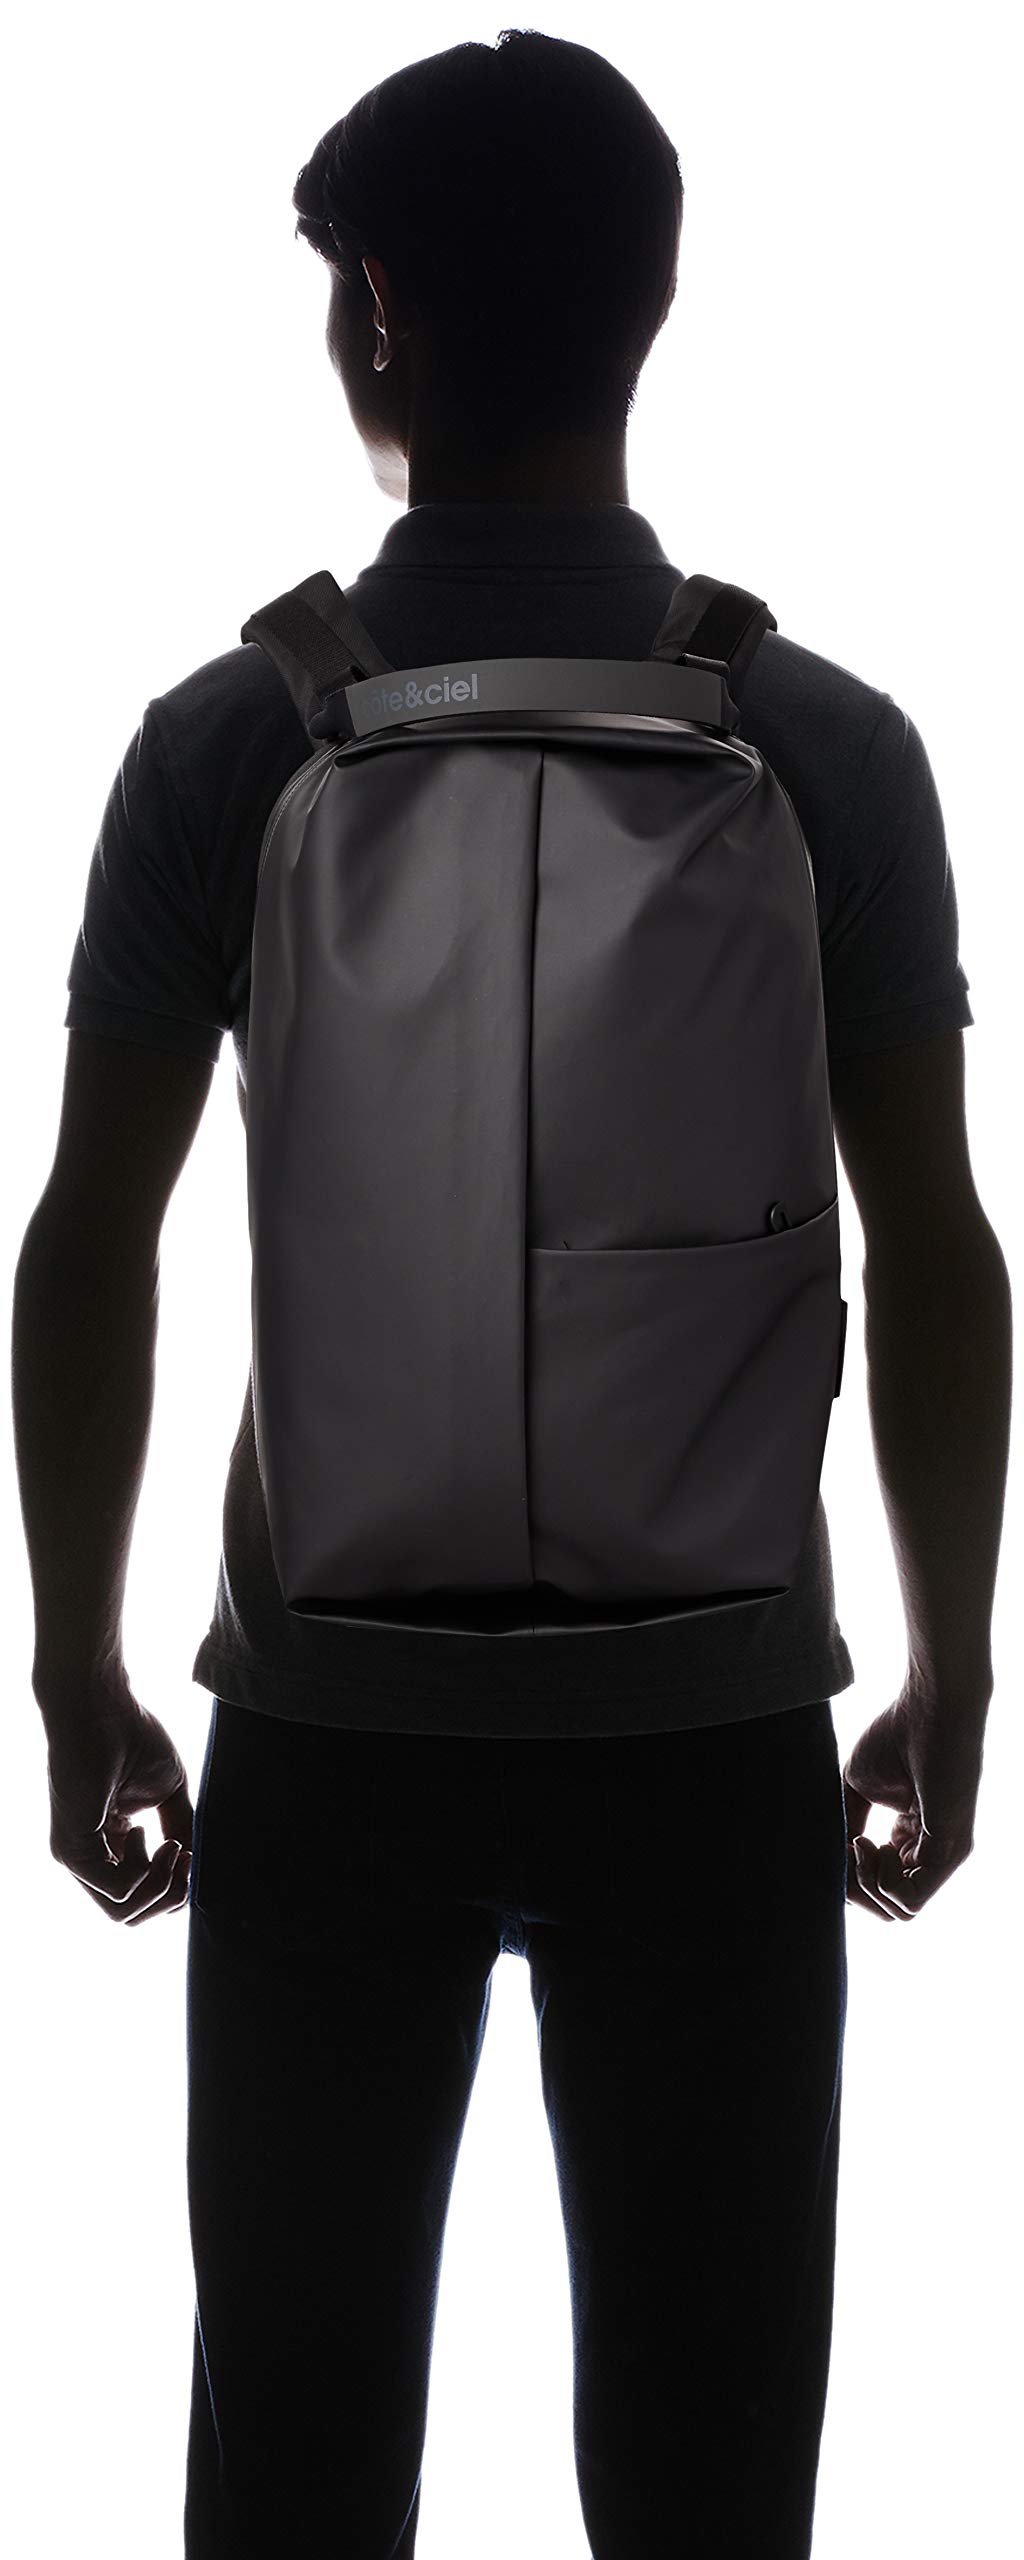 Cote & Ciel Men's Sormonne Obsidian Backpack, Black, One Size